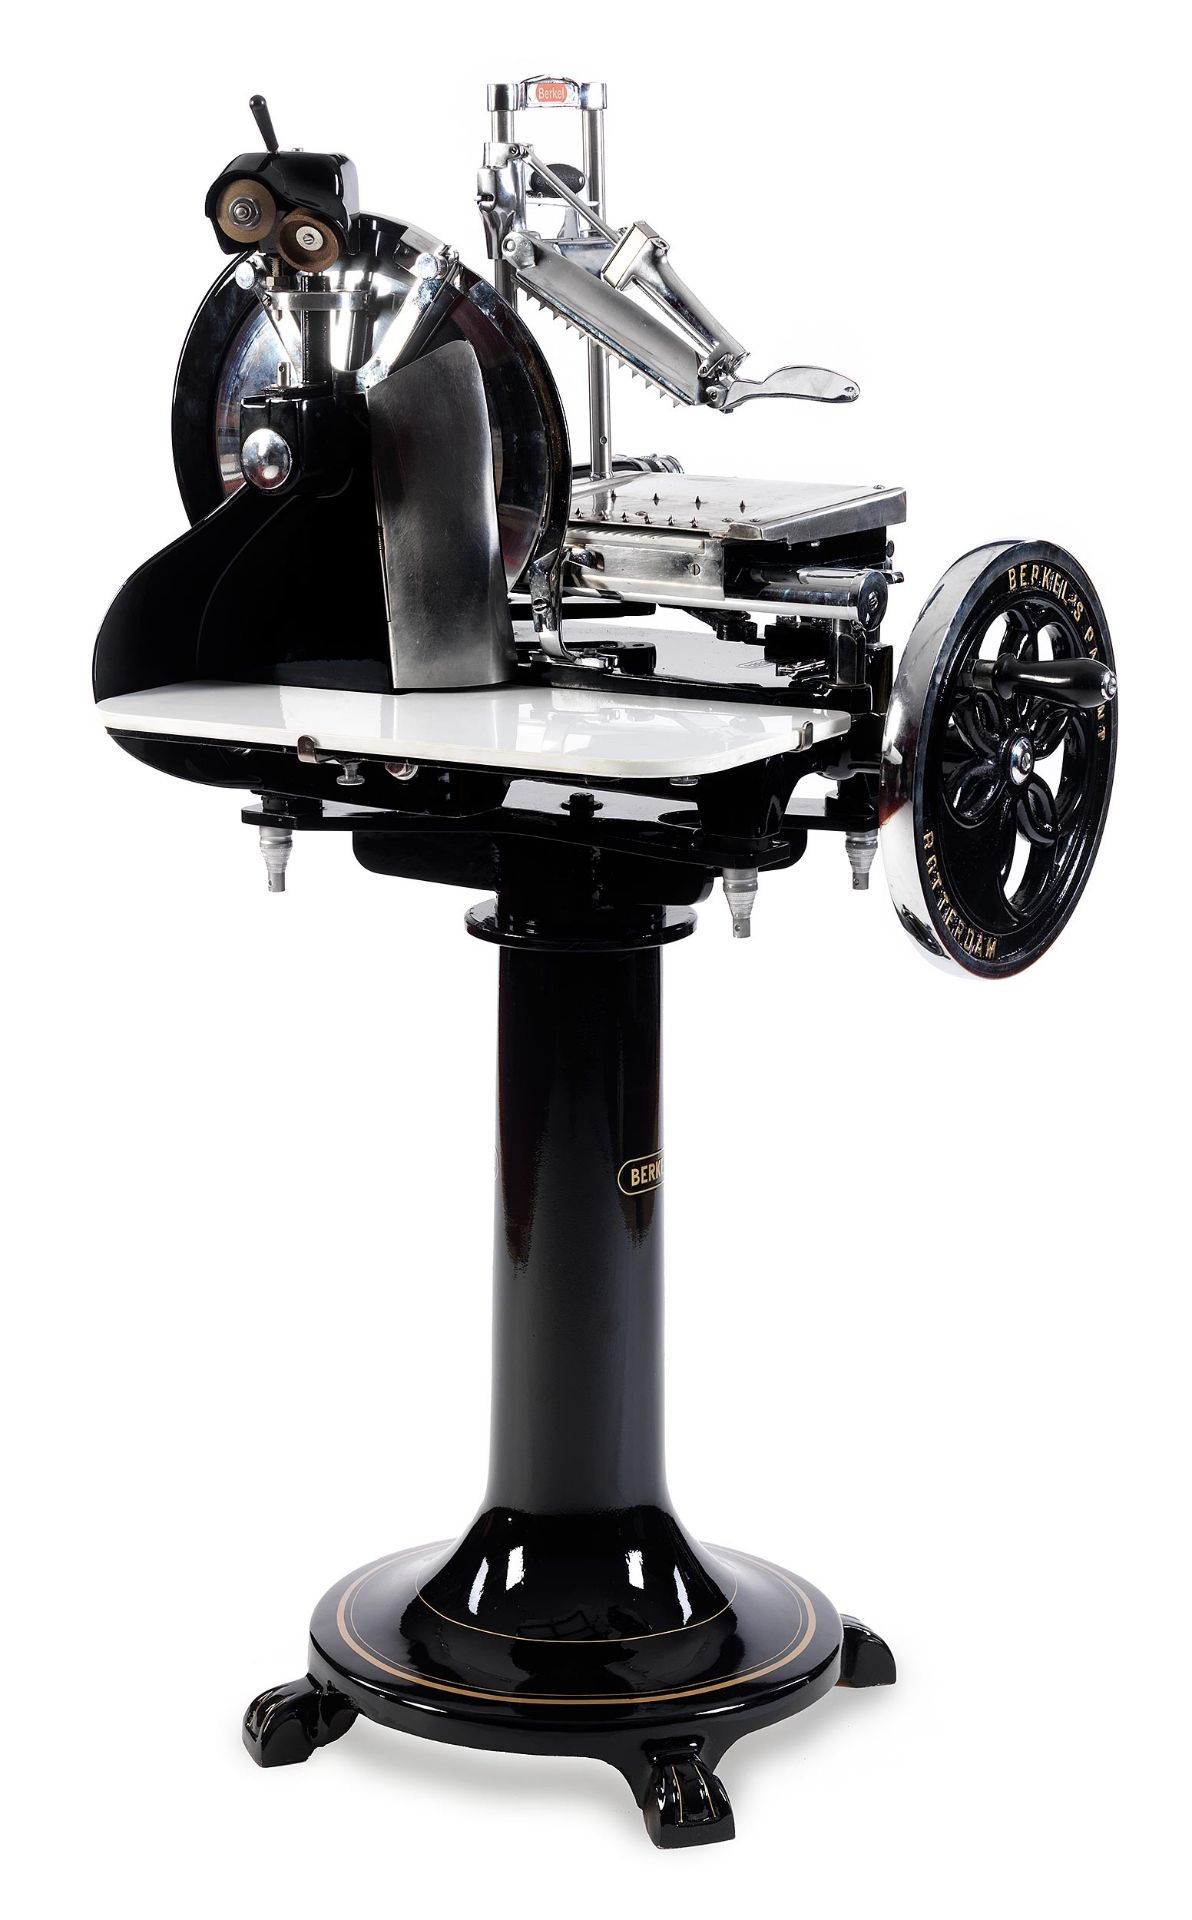 Berkel-Schinkenschneidemaschine Modell 8 in Schwarz